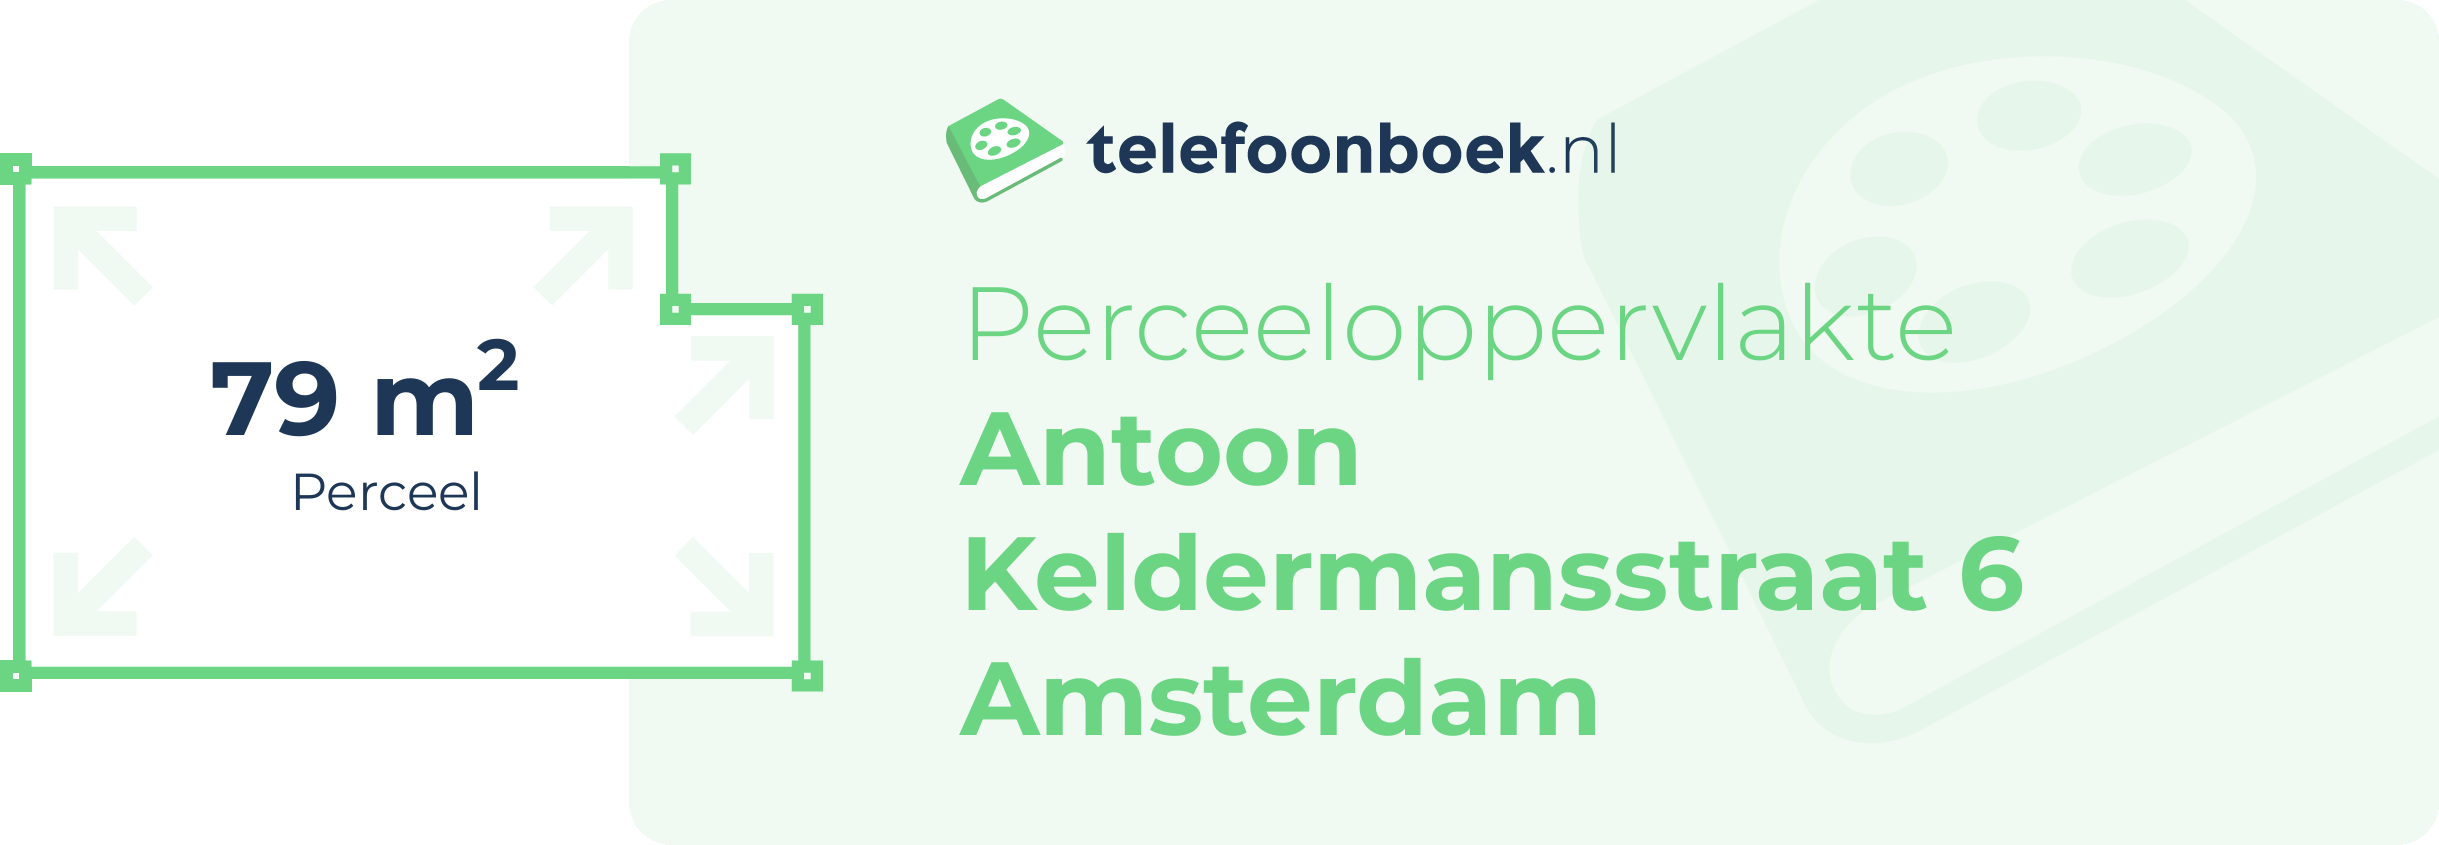 Perceeloppervlakte Antoon Keldermansstraat 6 Amsterdam